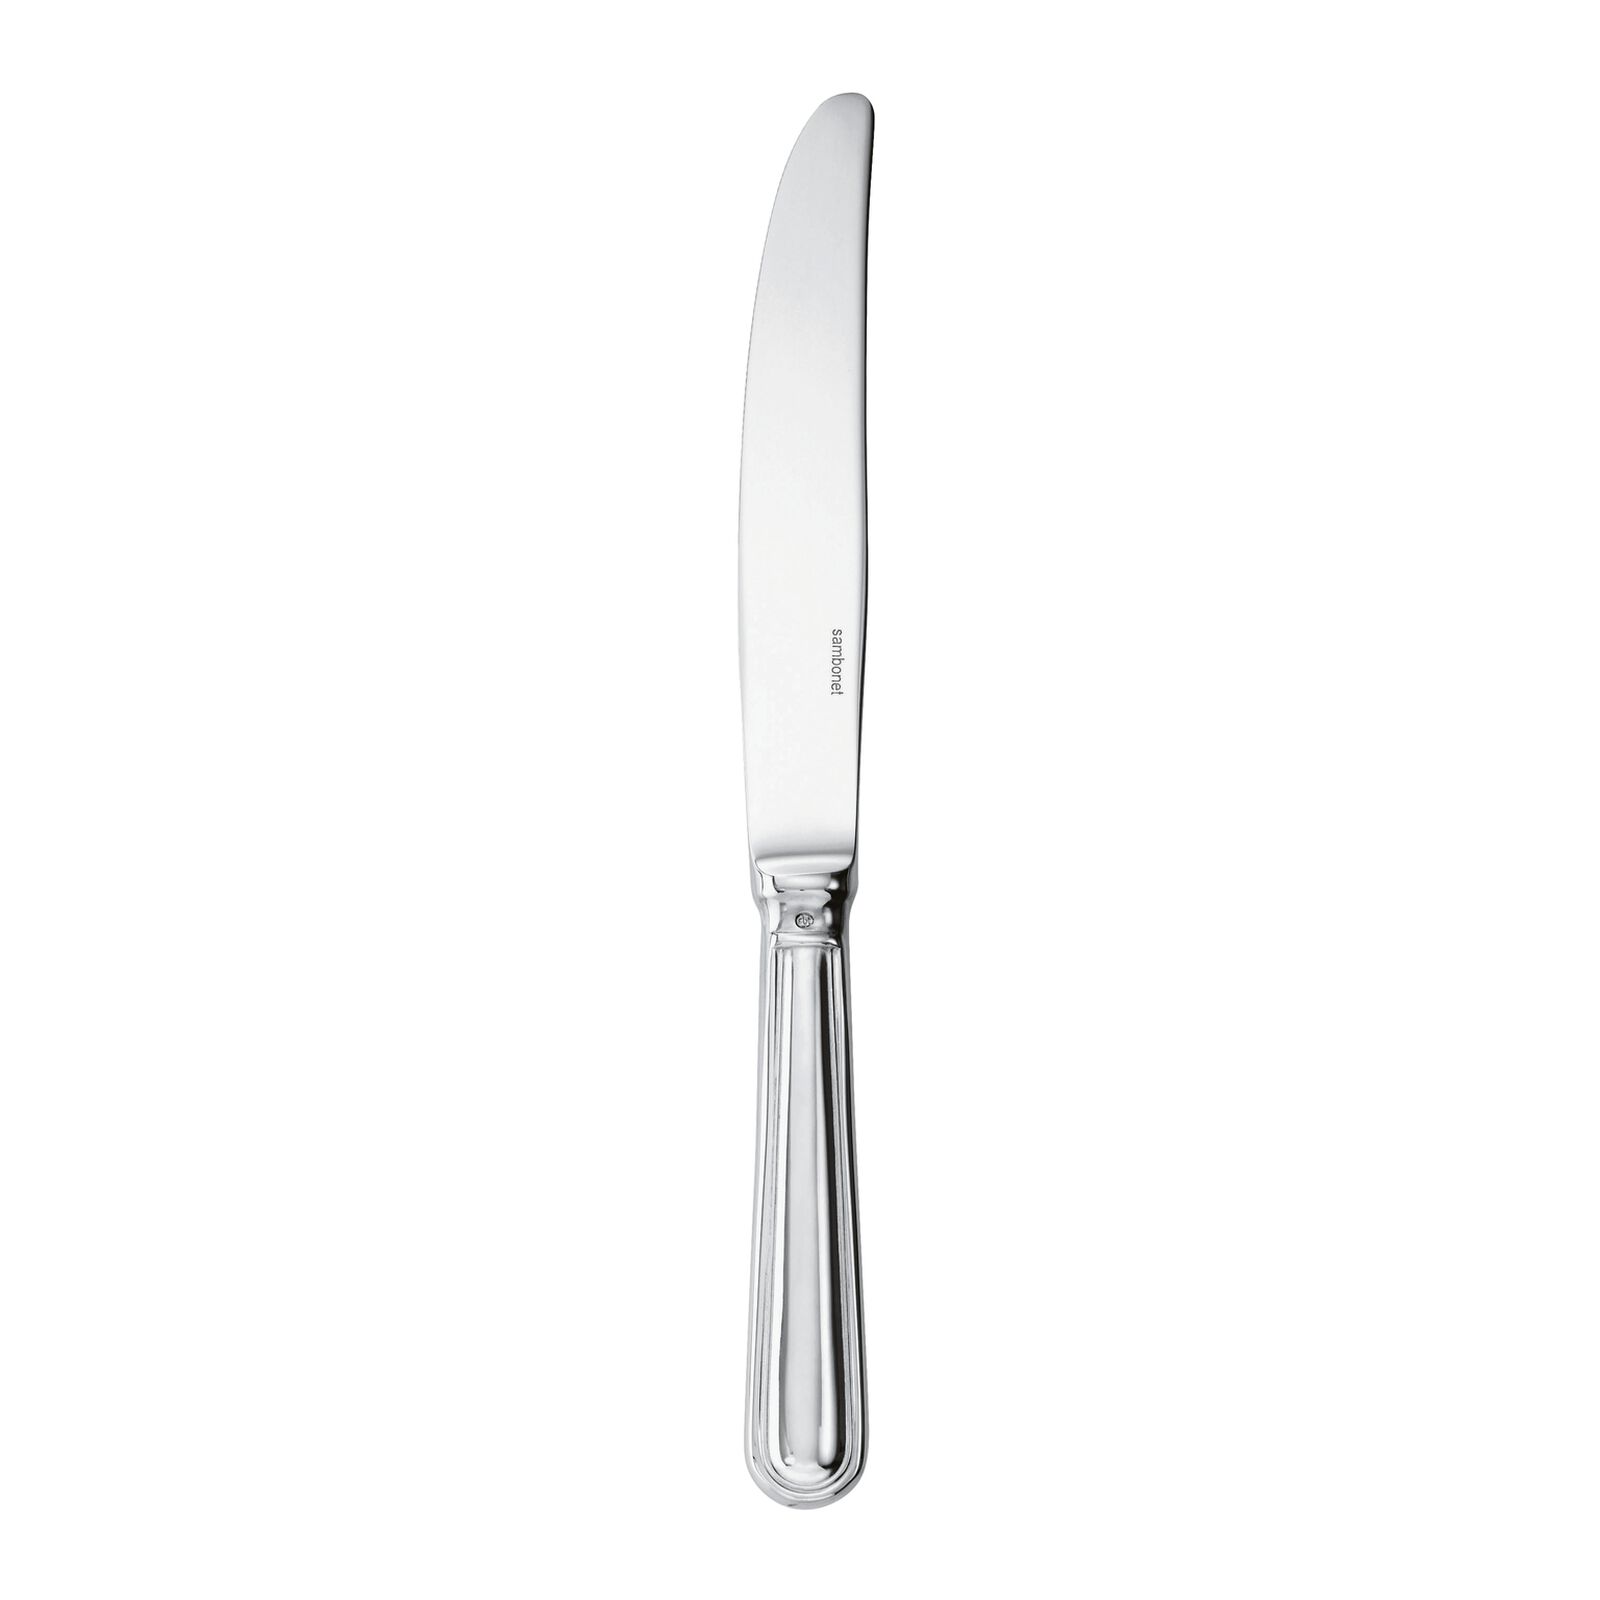 Table Knives: Dinner, Butter, Dessert Knives & More